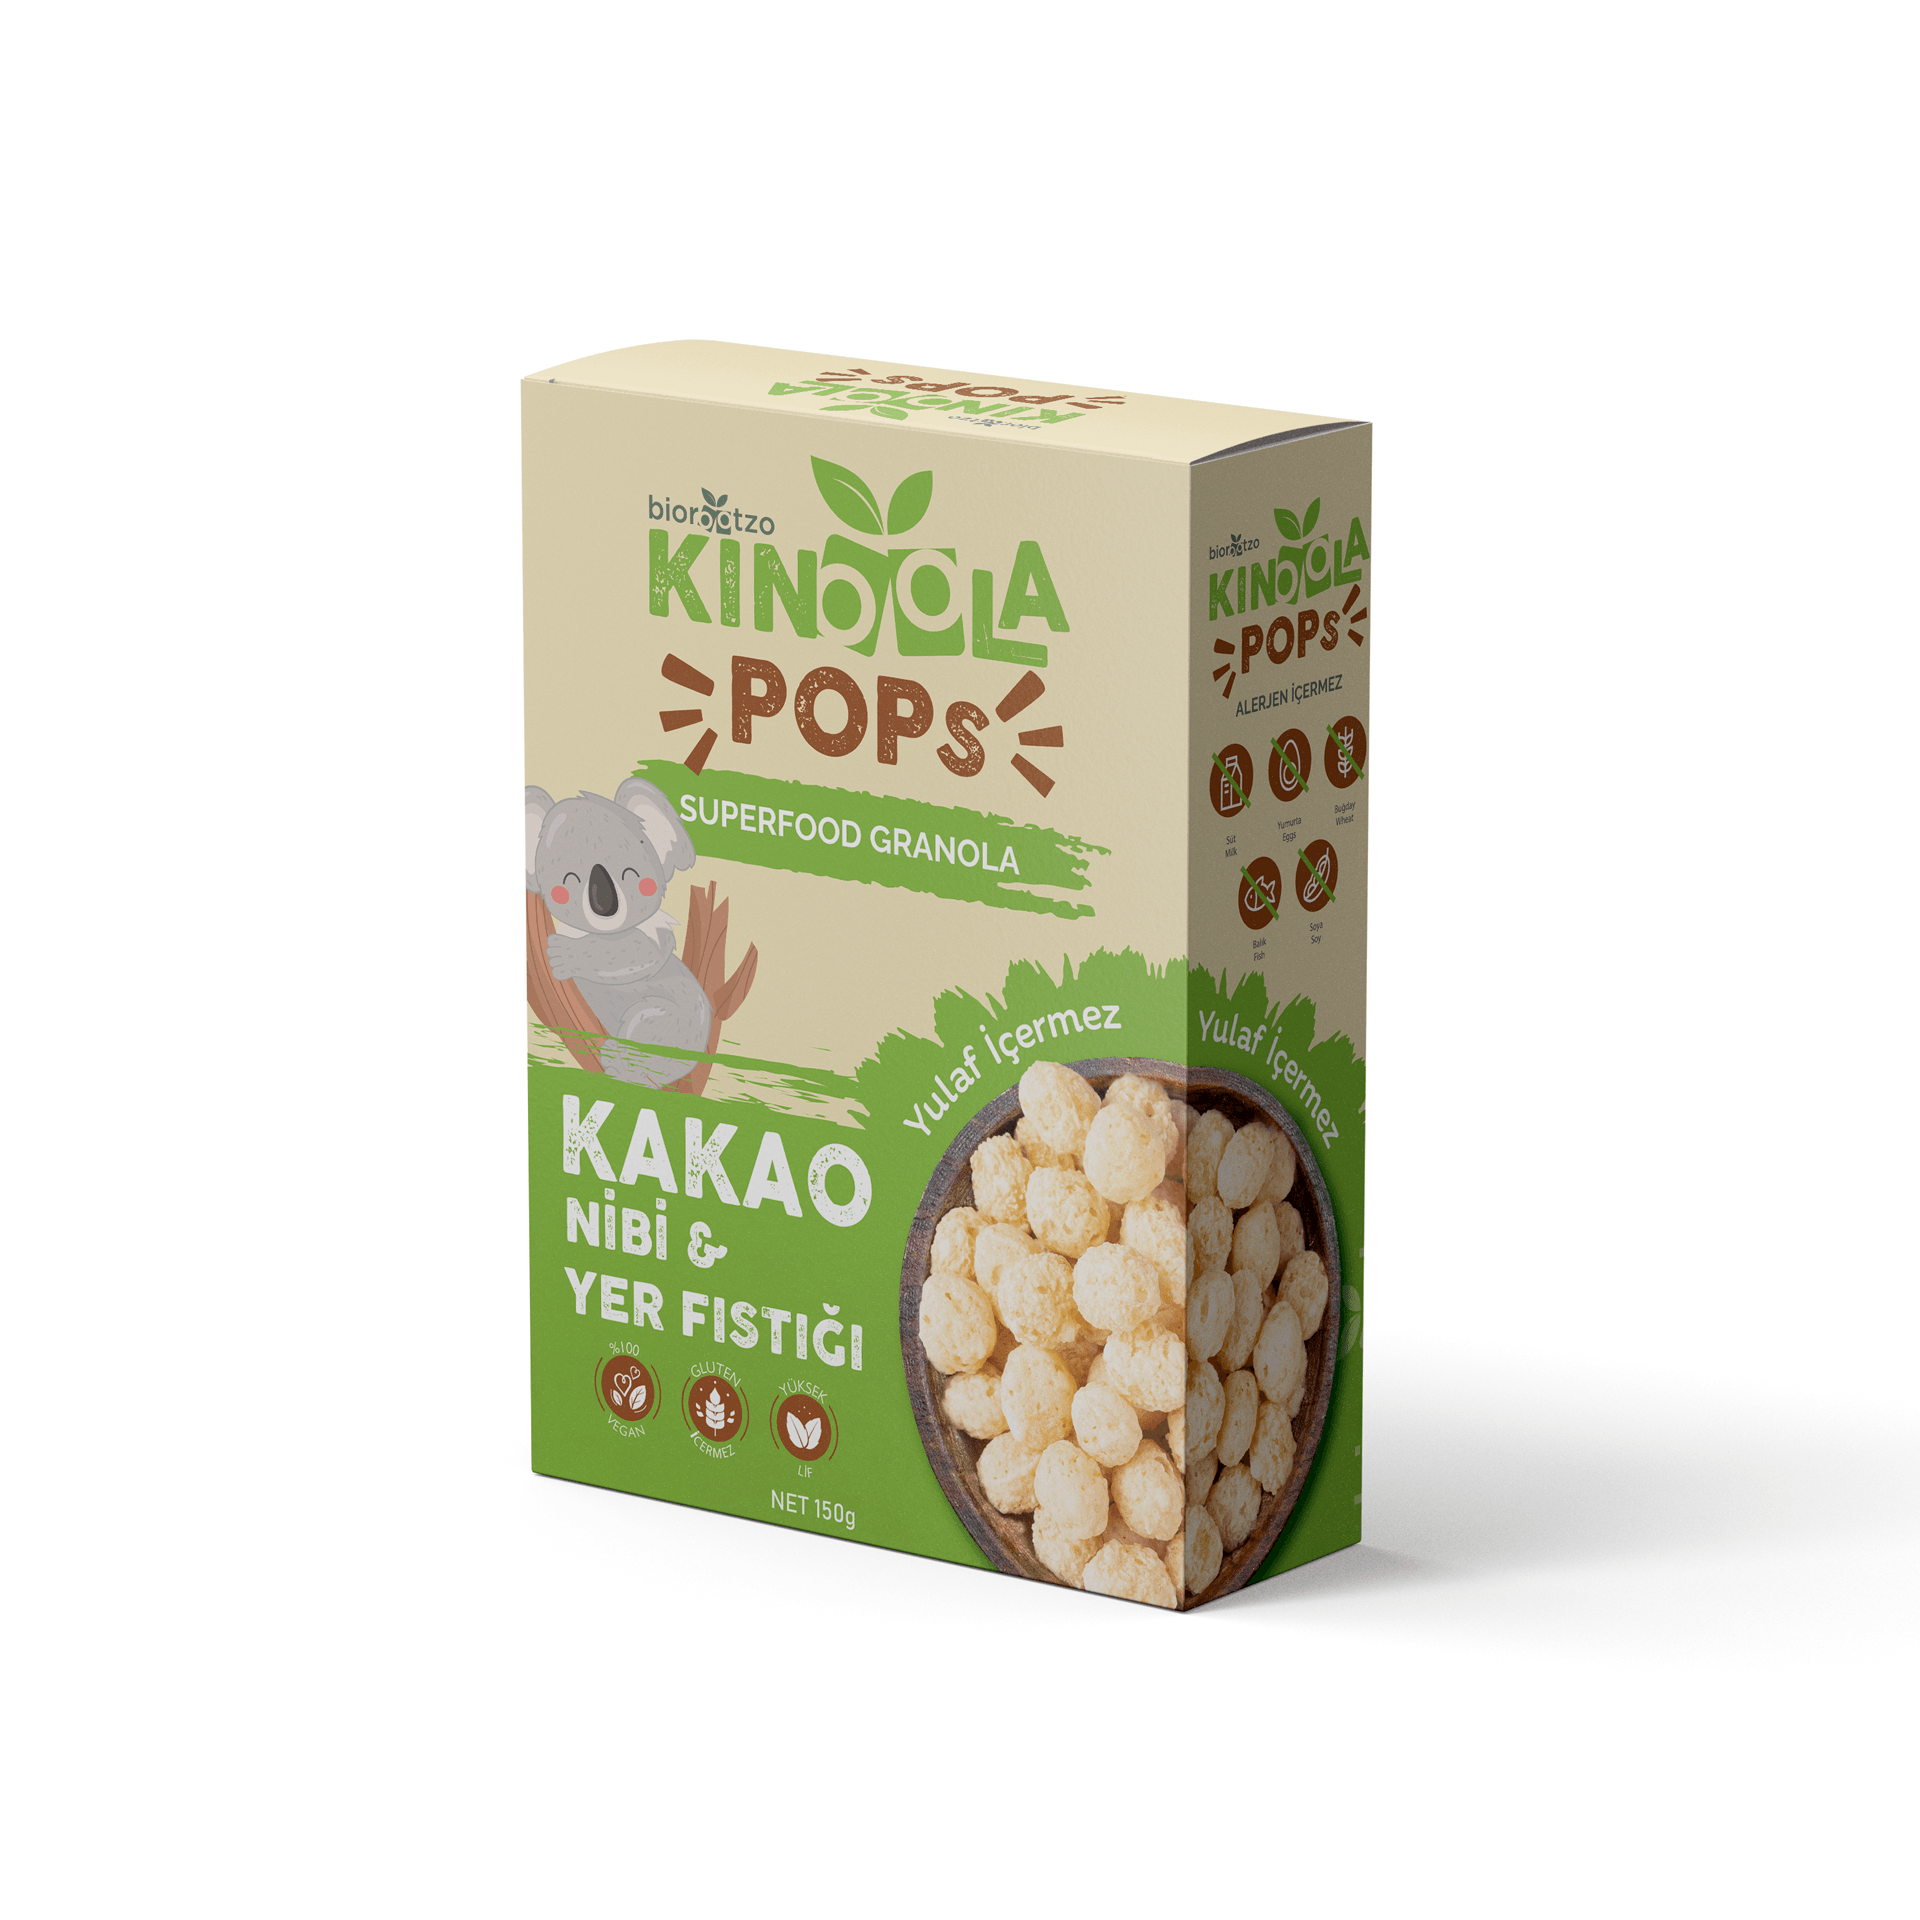 Kinoola Pop Kahvaltılık Gevrek - Kakao Nibi & Yer Fıstığı - Yulaf İçermeyen - Glütensiz Vegan Granola 150 g